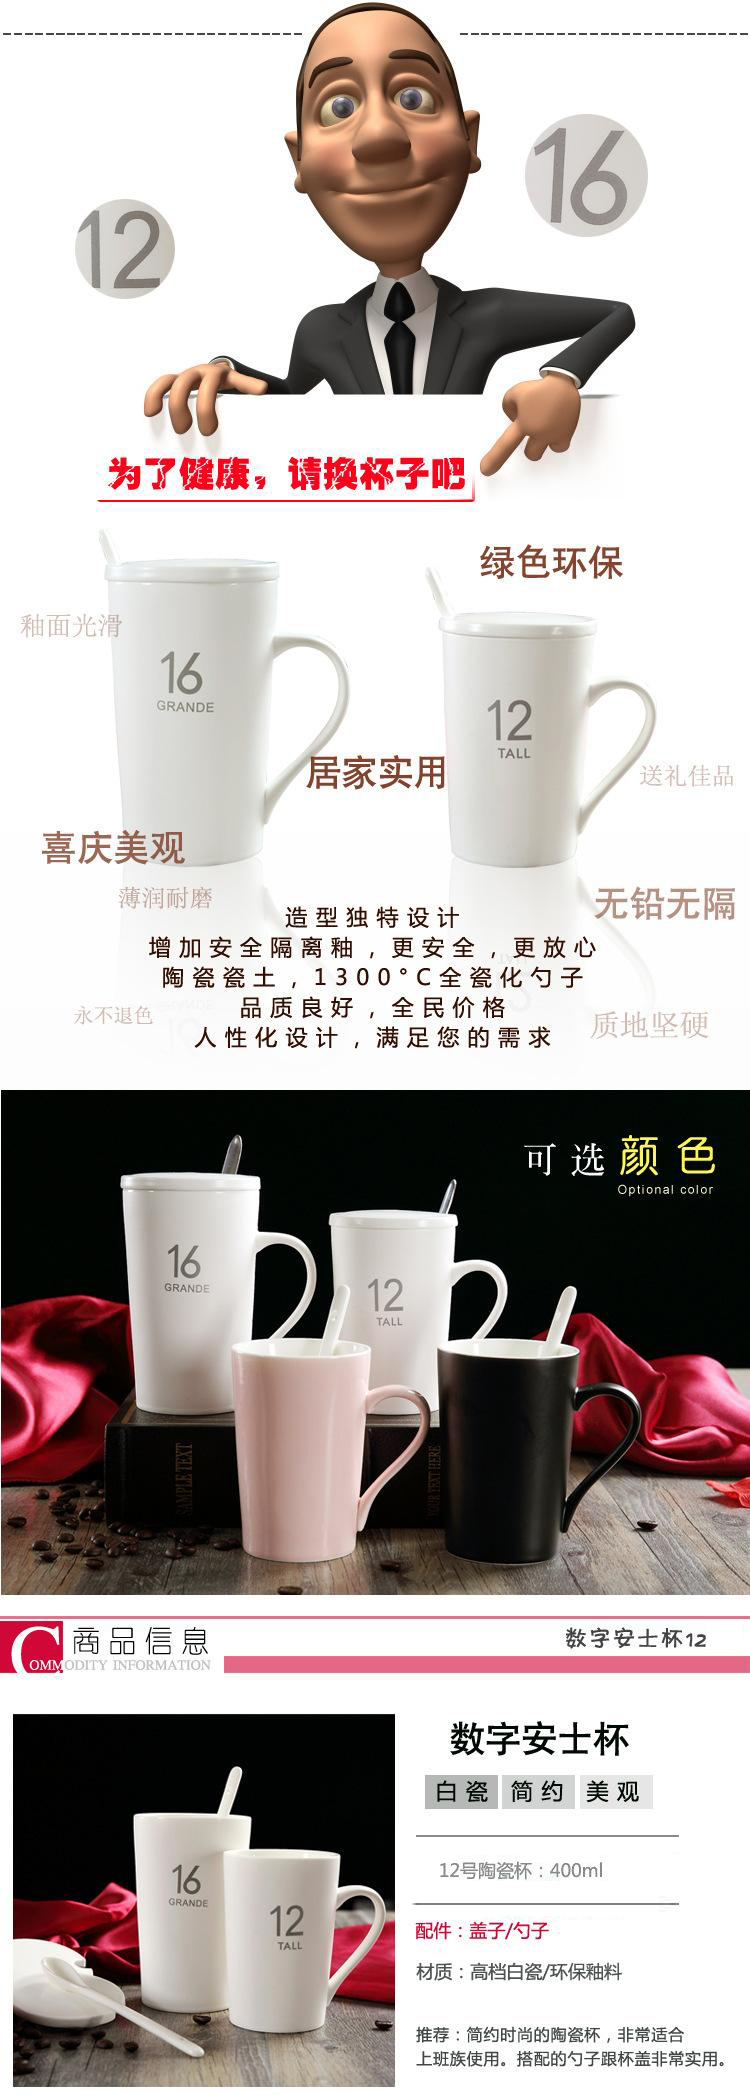 陶瓷马克杯 12盎司 创意亚光水杯 咖啡杯子 礼品广告马克杯 logo定制杯